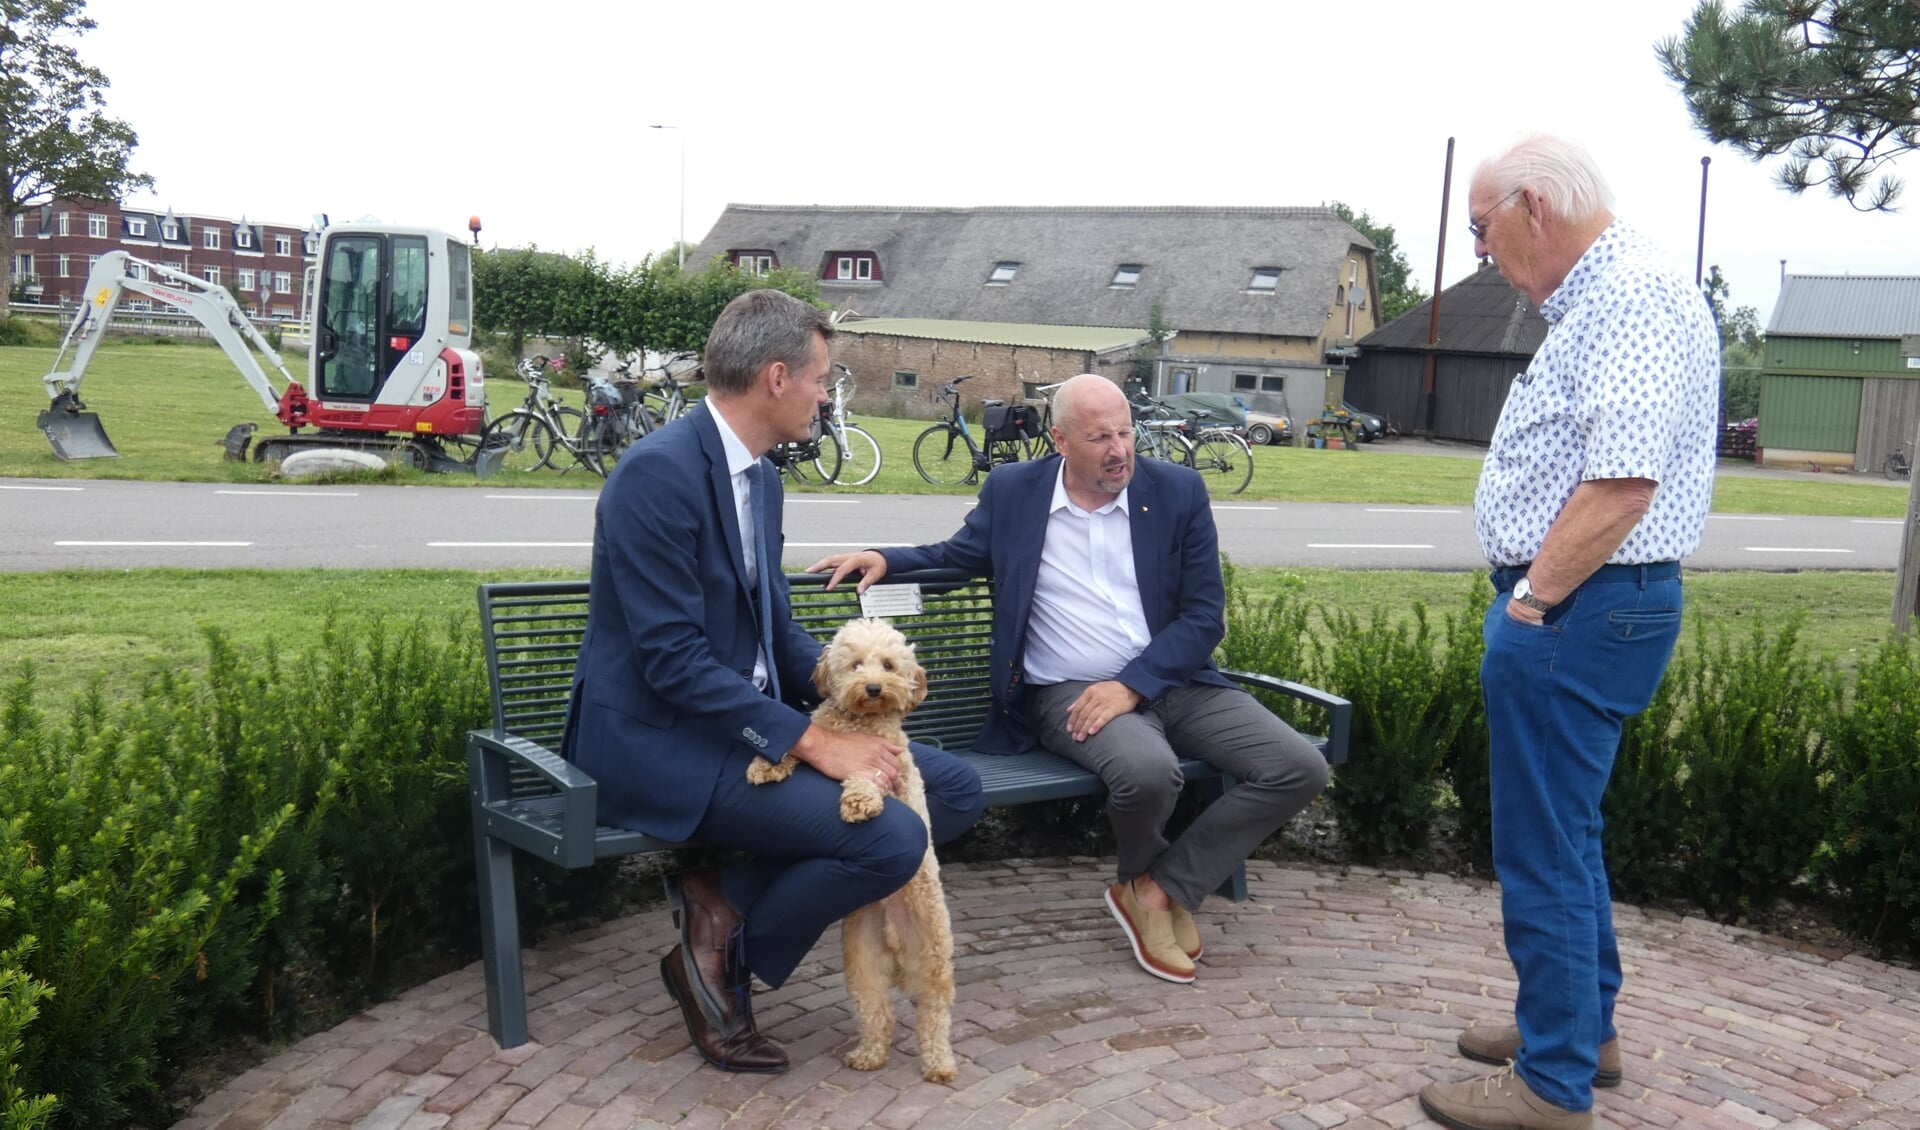 Burgemeester Nieuwenhuis met hond Jutter, Henk de Bas en Ton Broer van HGW. (tekst en foto: Annette vd Berg)  